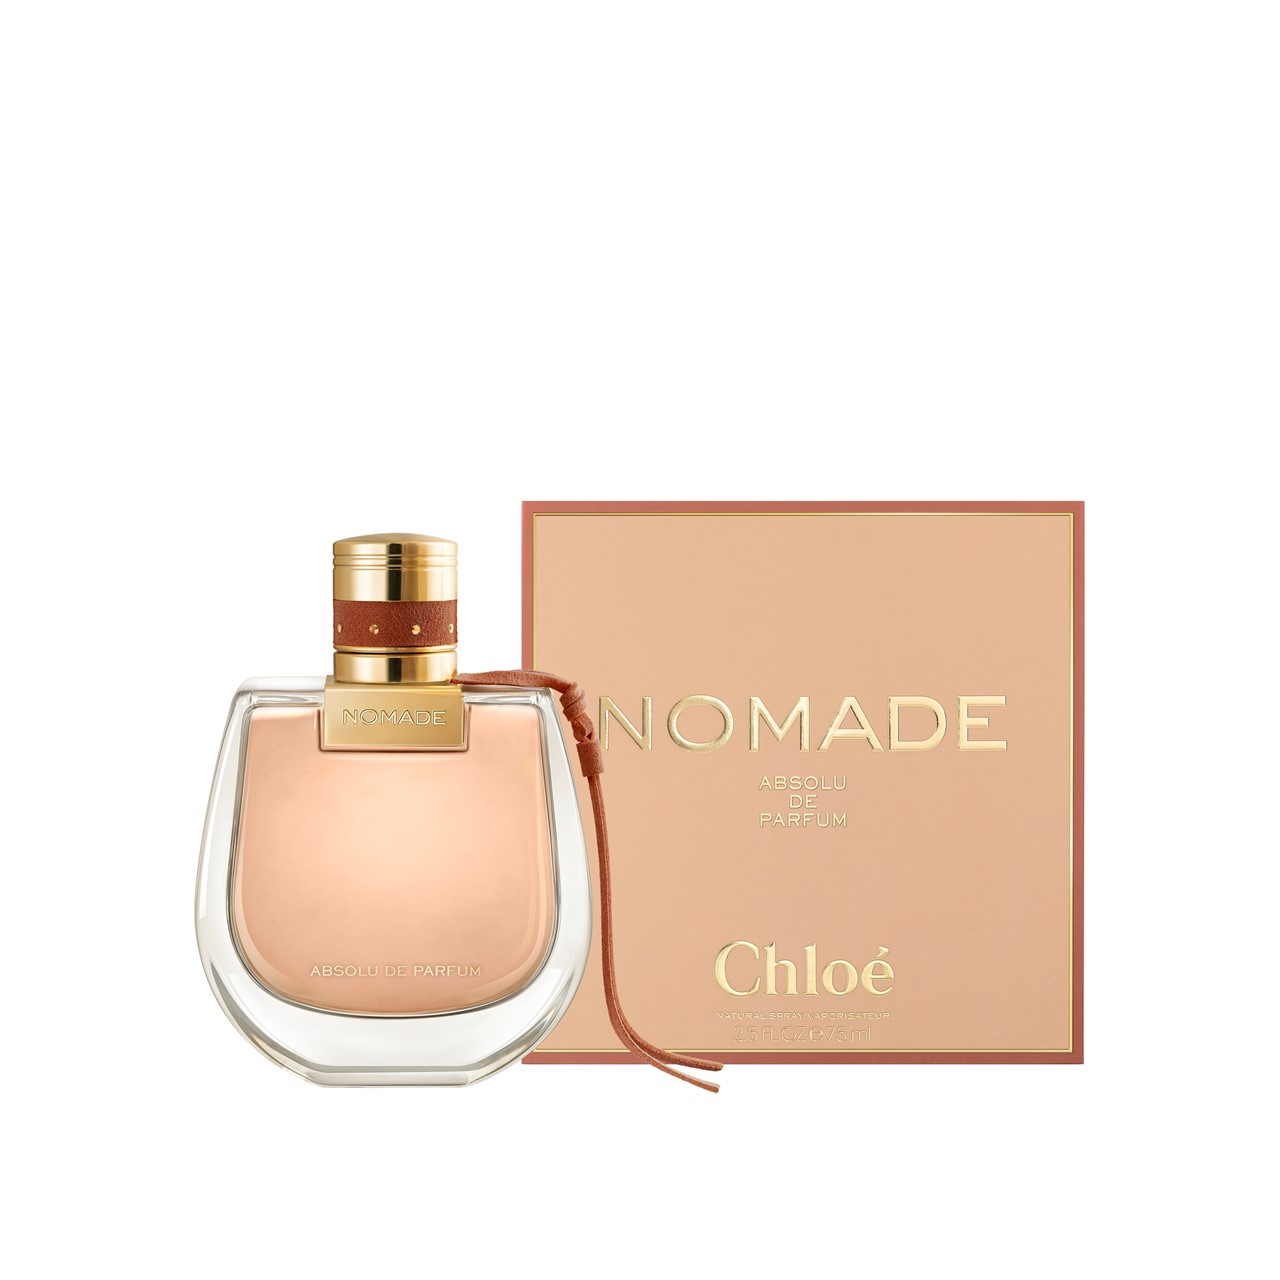 Buy Chloé Nomade Absolu Eau de Parfum 75ml (2.5fl oz) · USA